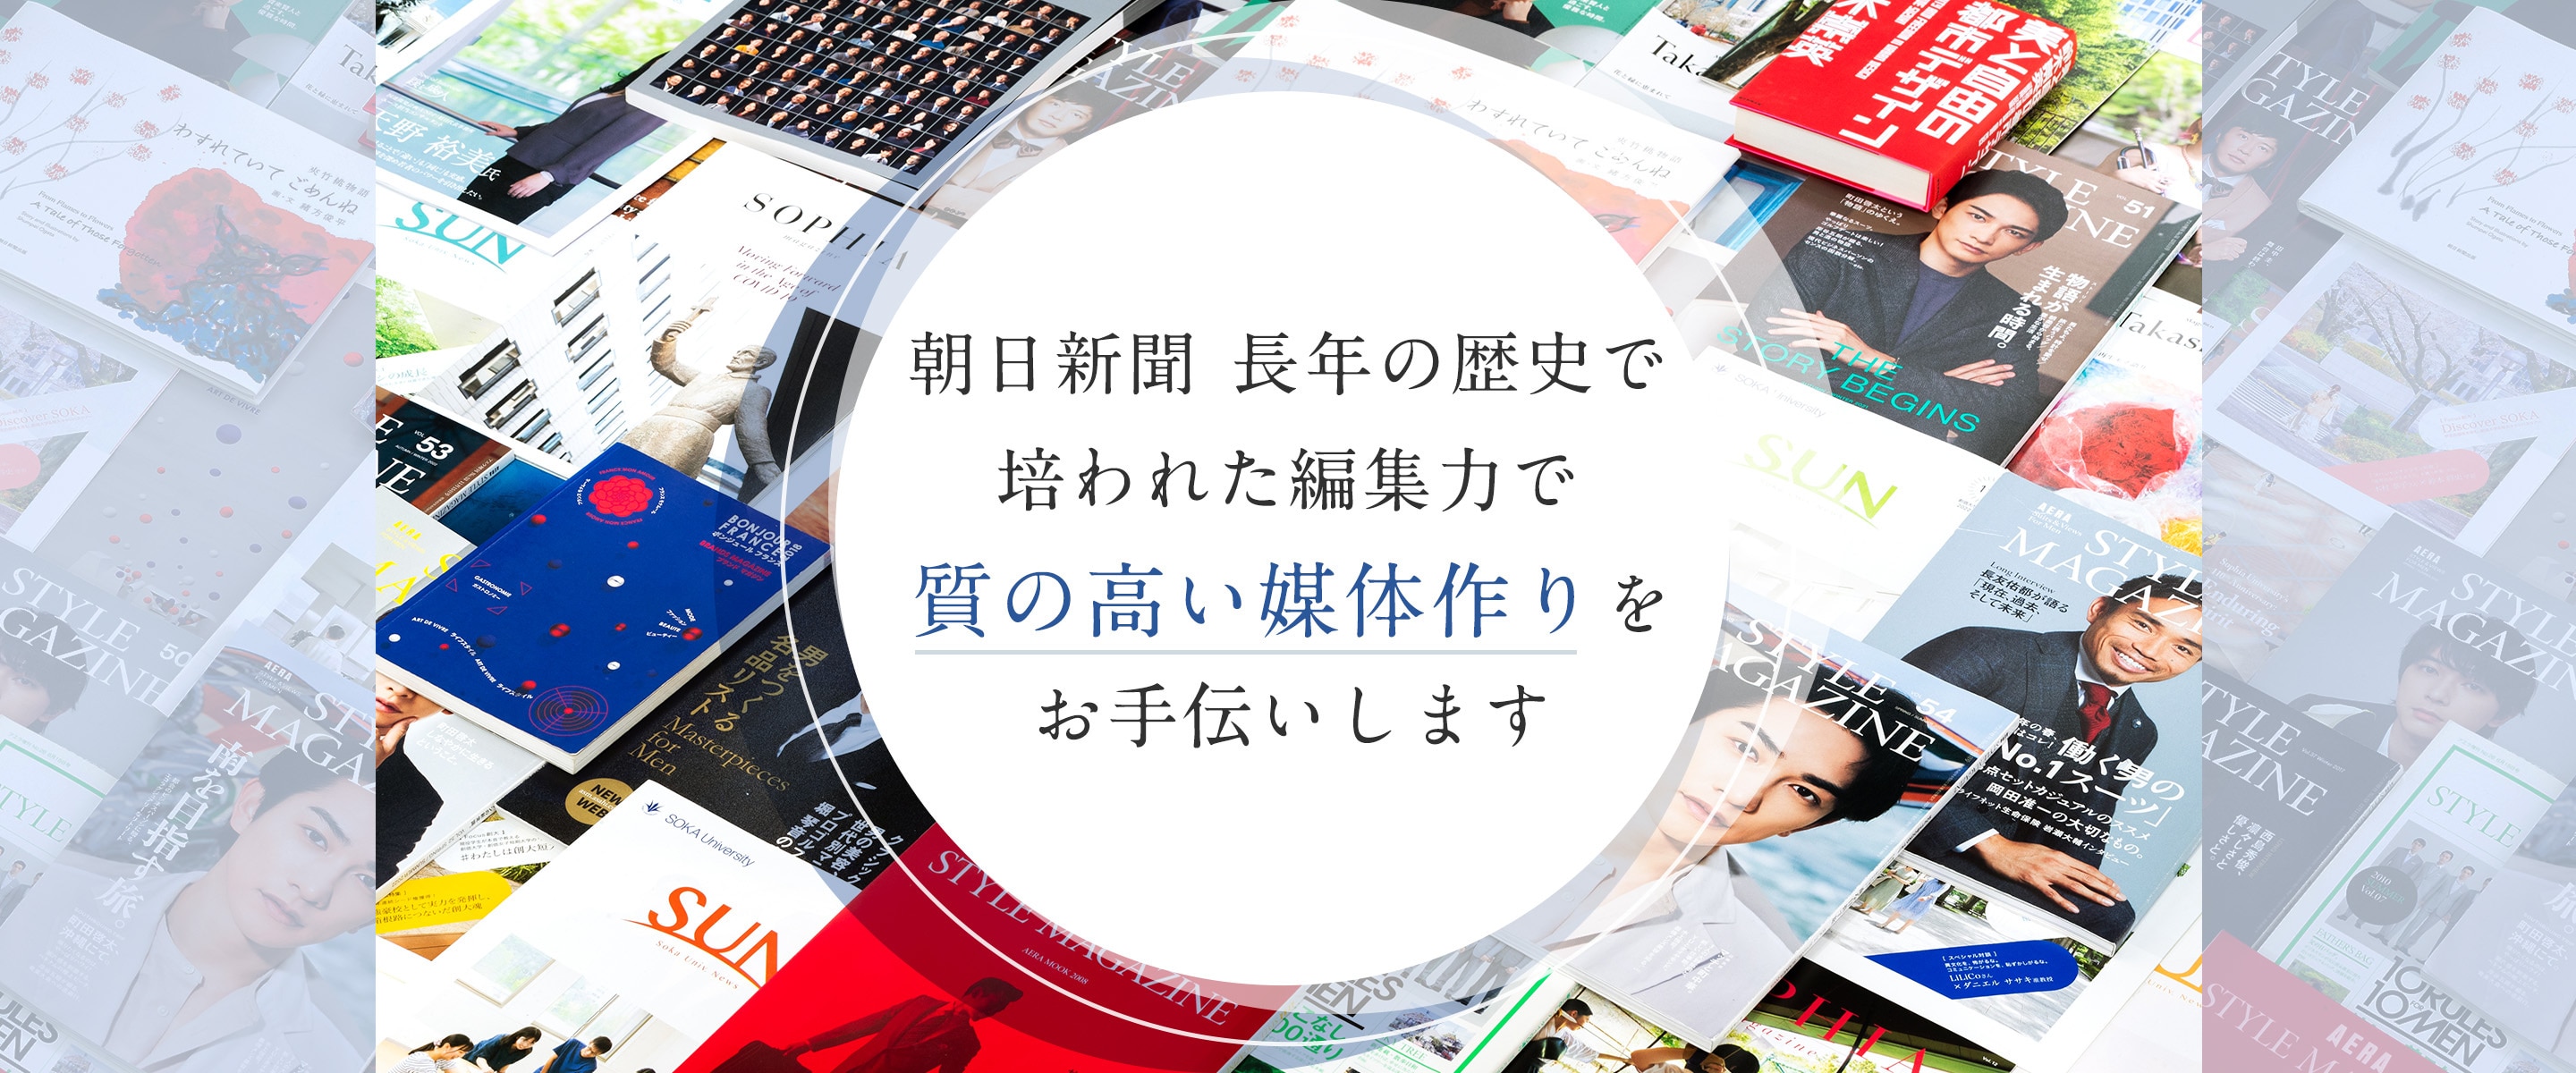 朝日新聞長年の歴史で培われた編集力で質の高い媒体作りをお手伝いします